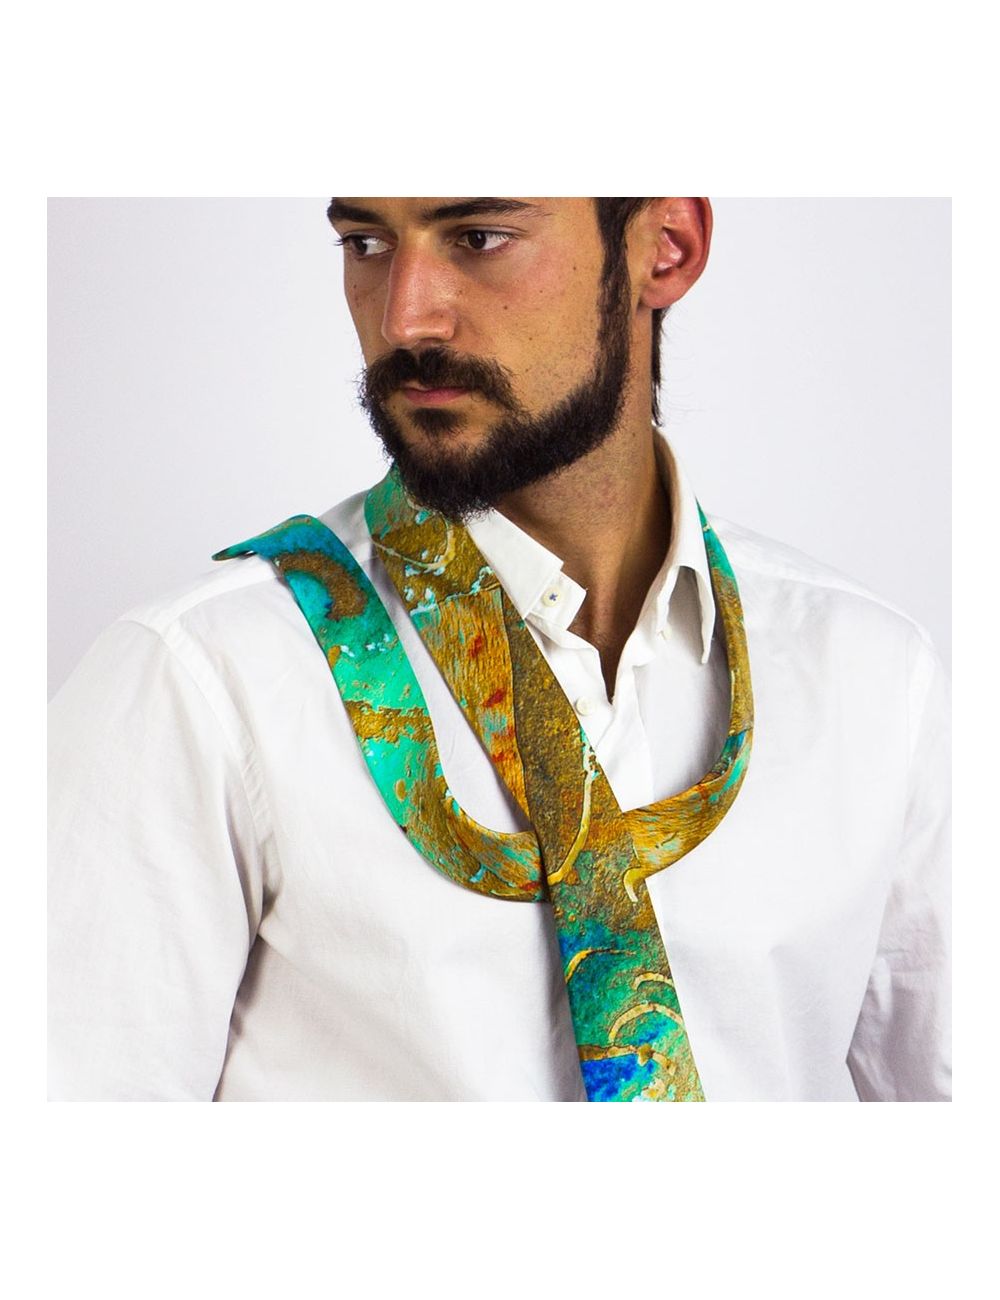 Corbata de seda natural Óxido Marino G, de diseño exclusivo para el hombre viajero